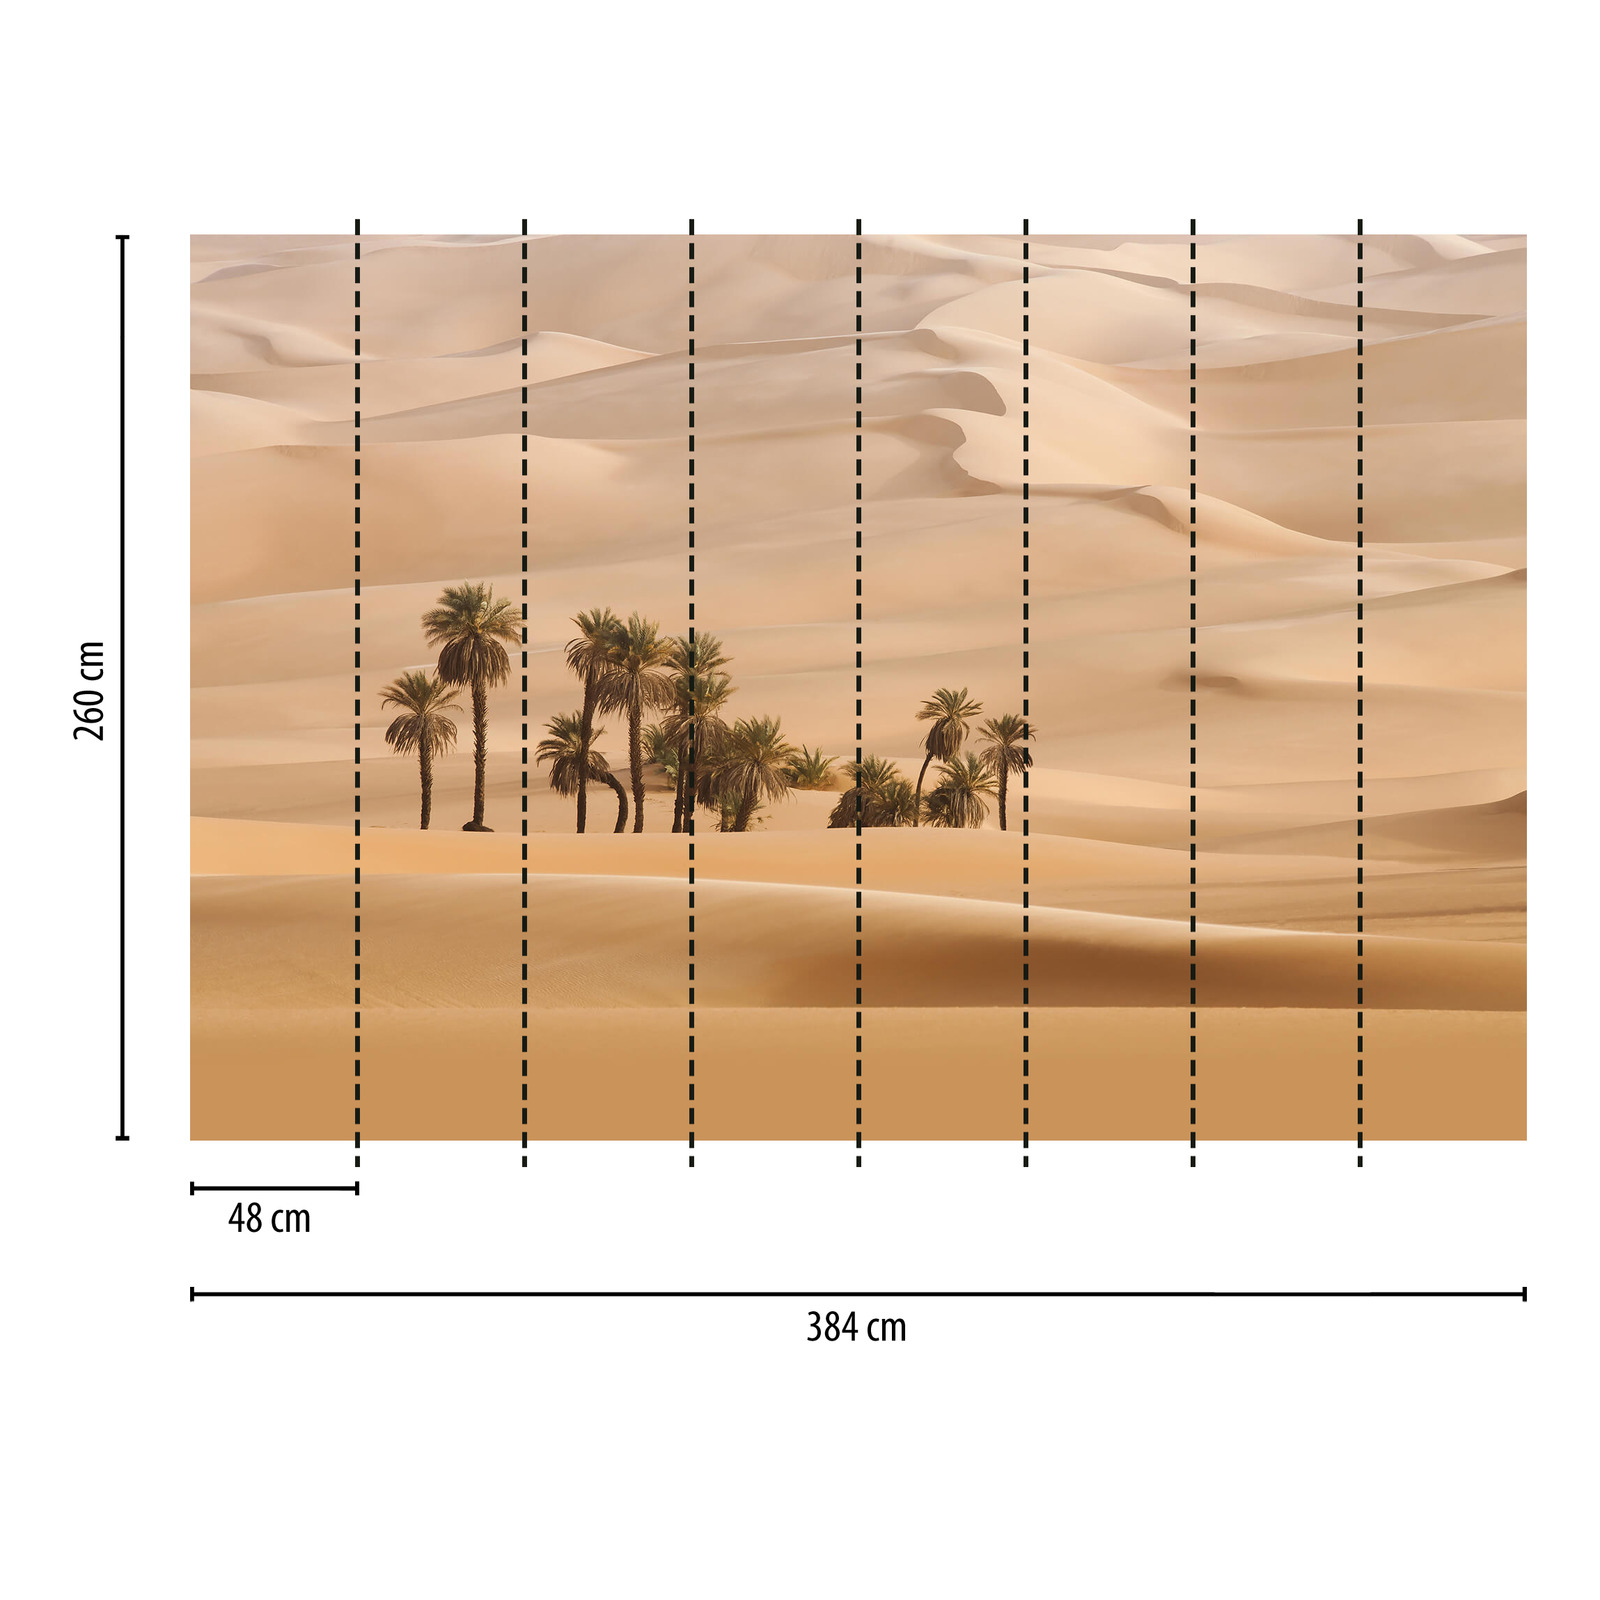             Fotomurali deserto con palme - beige
        